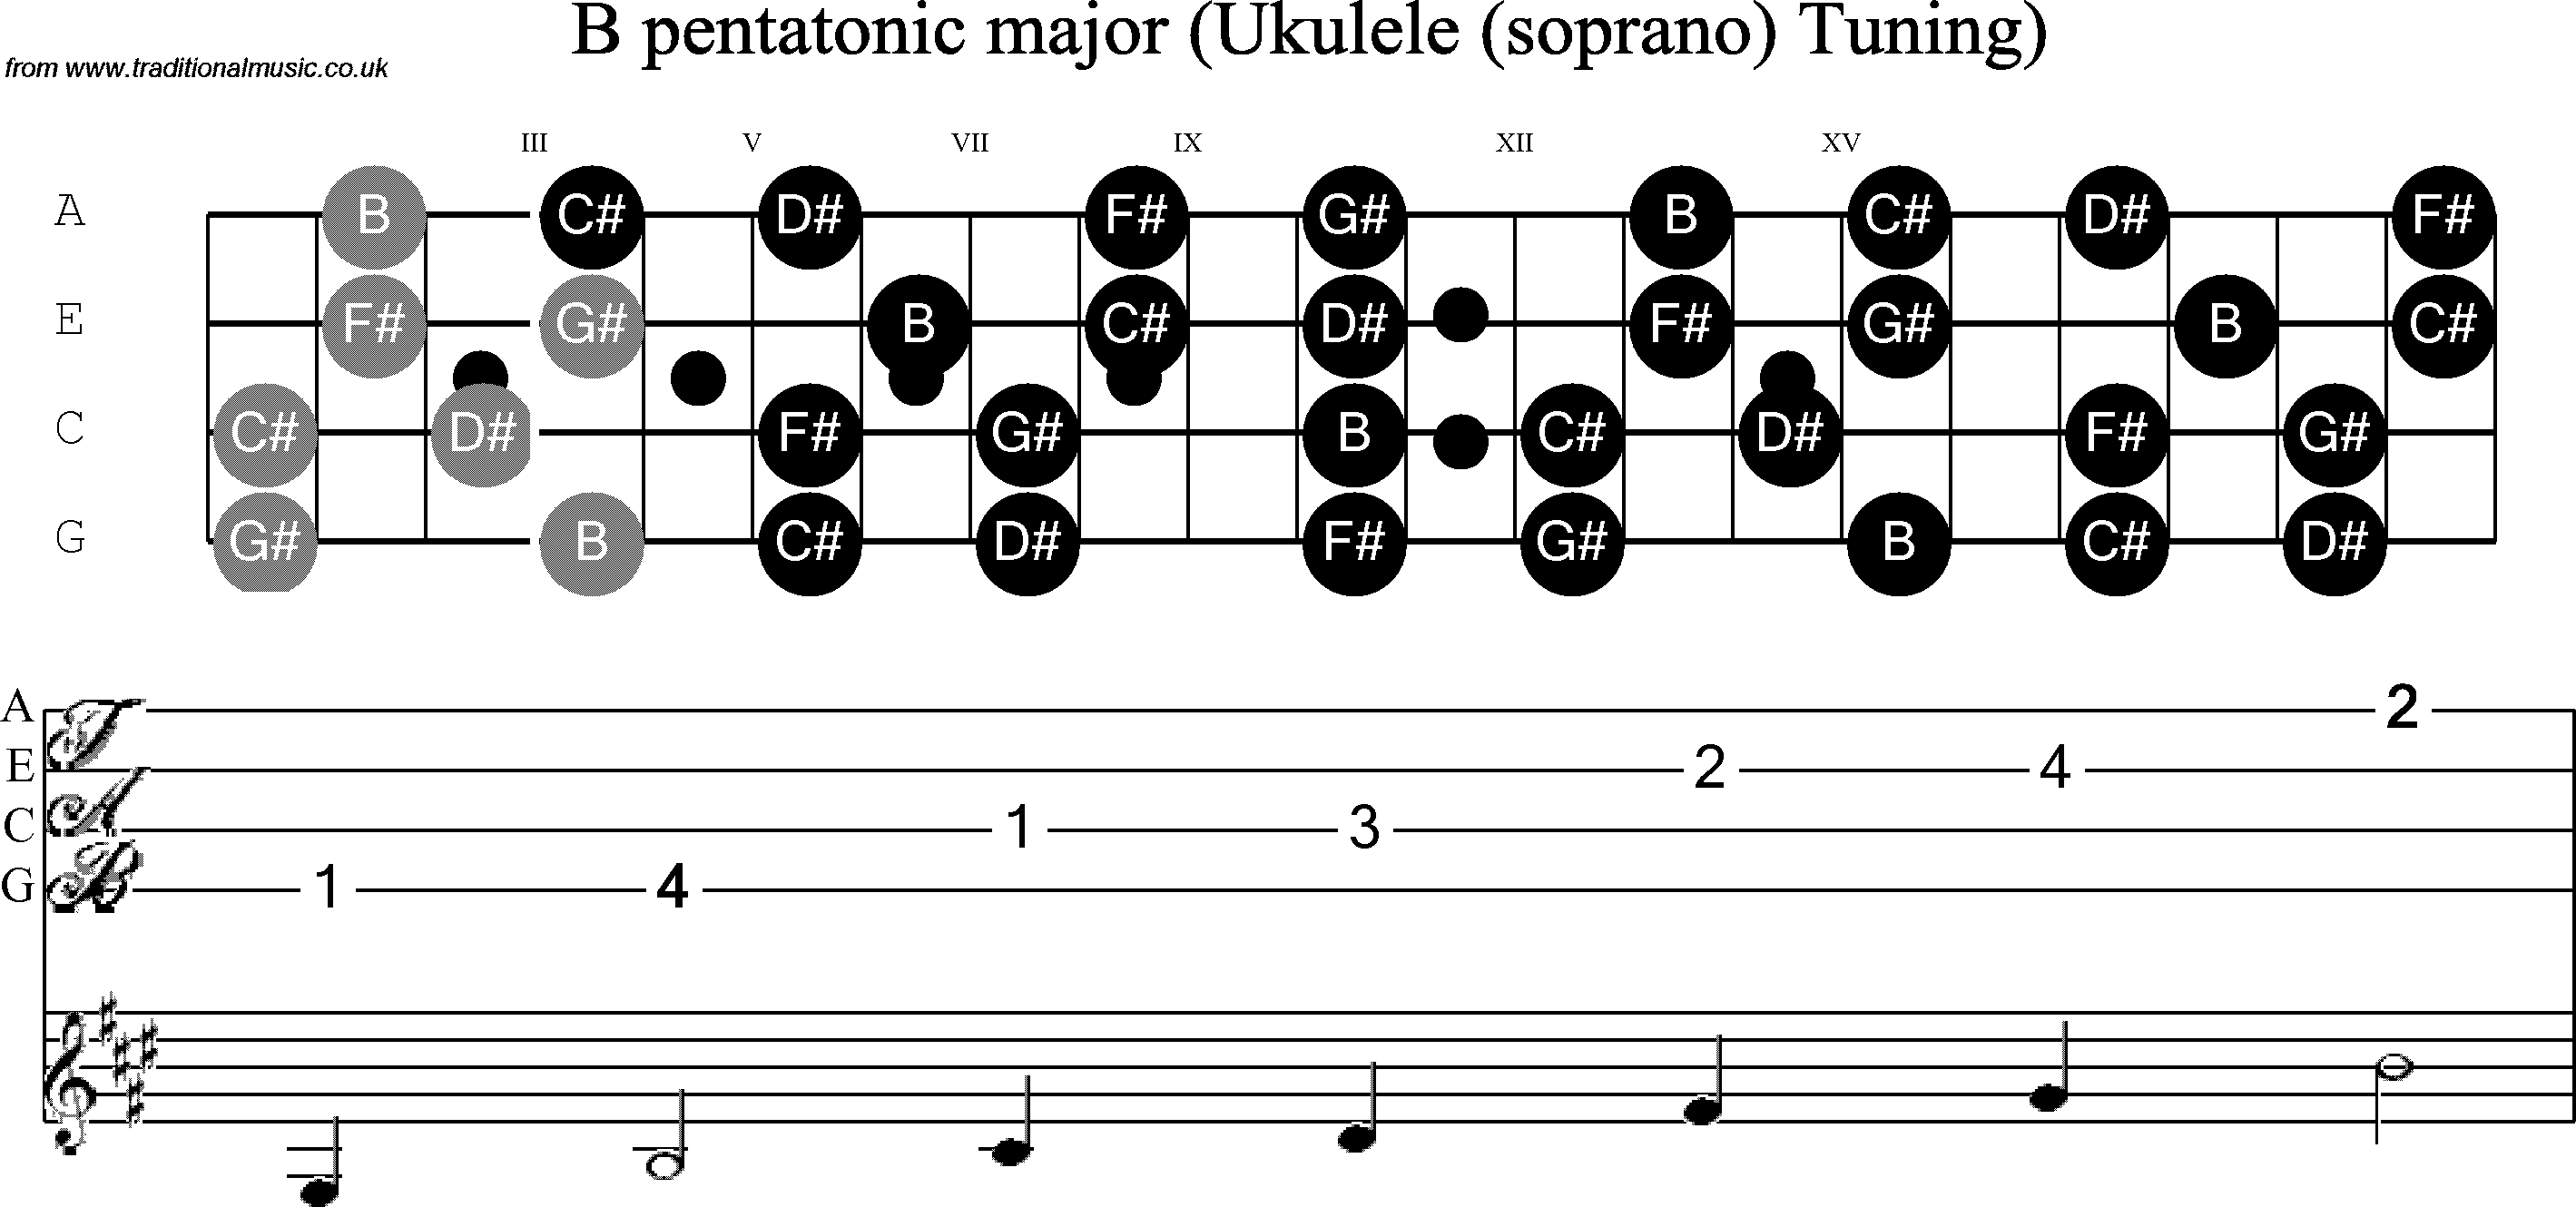 Scale, stave and neck diagram for Ukulele B Pentatonic